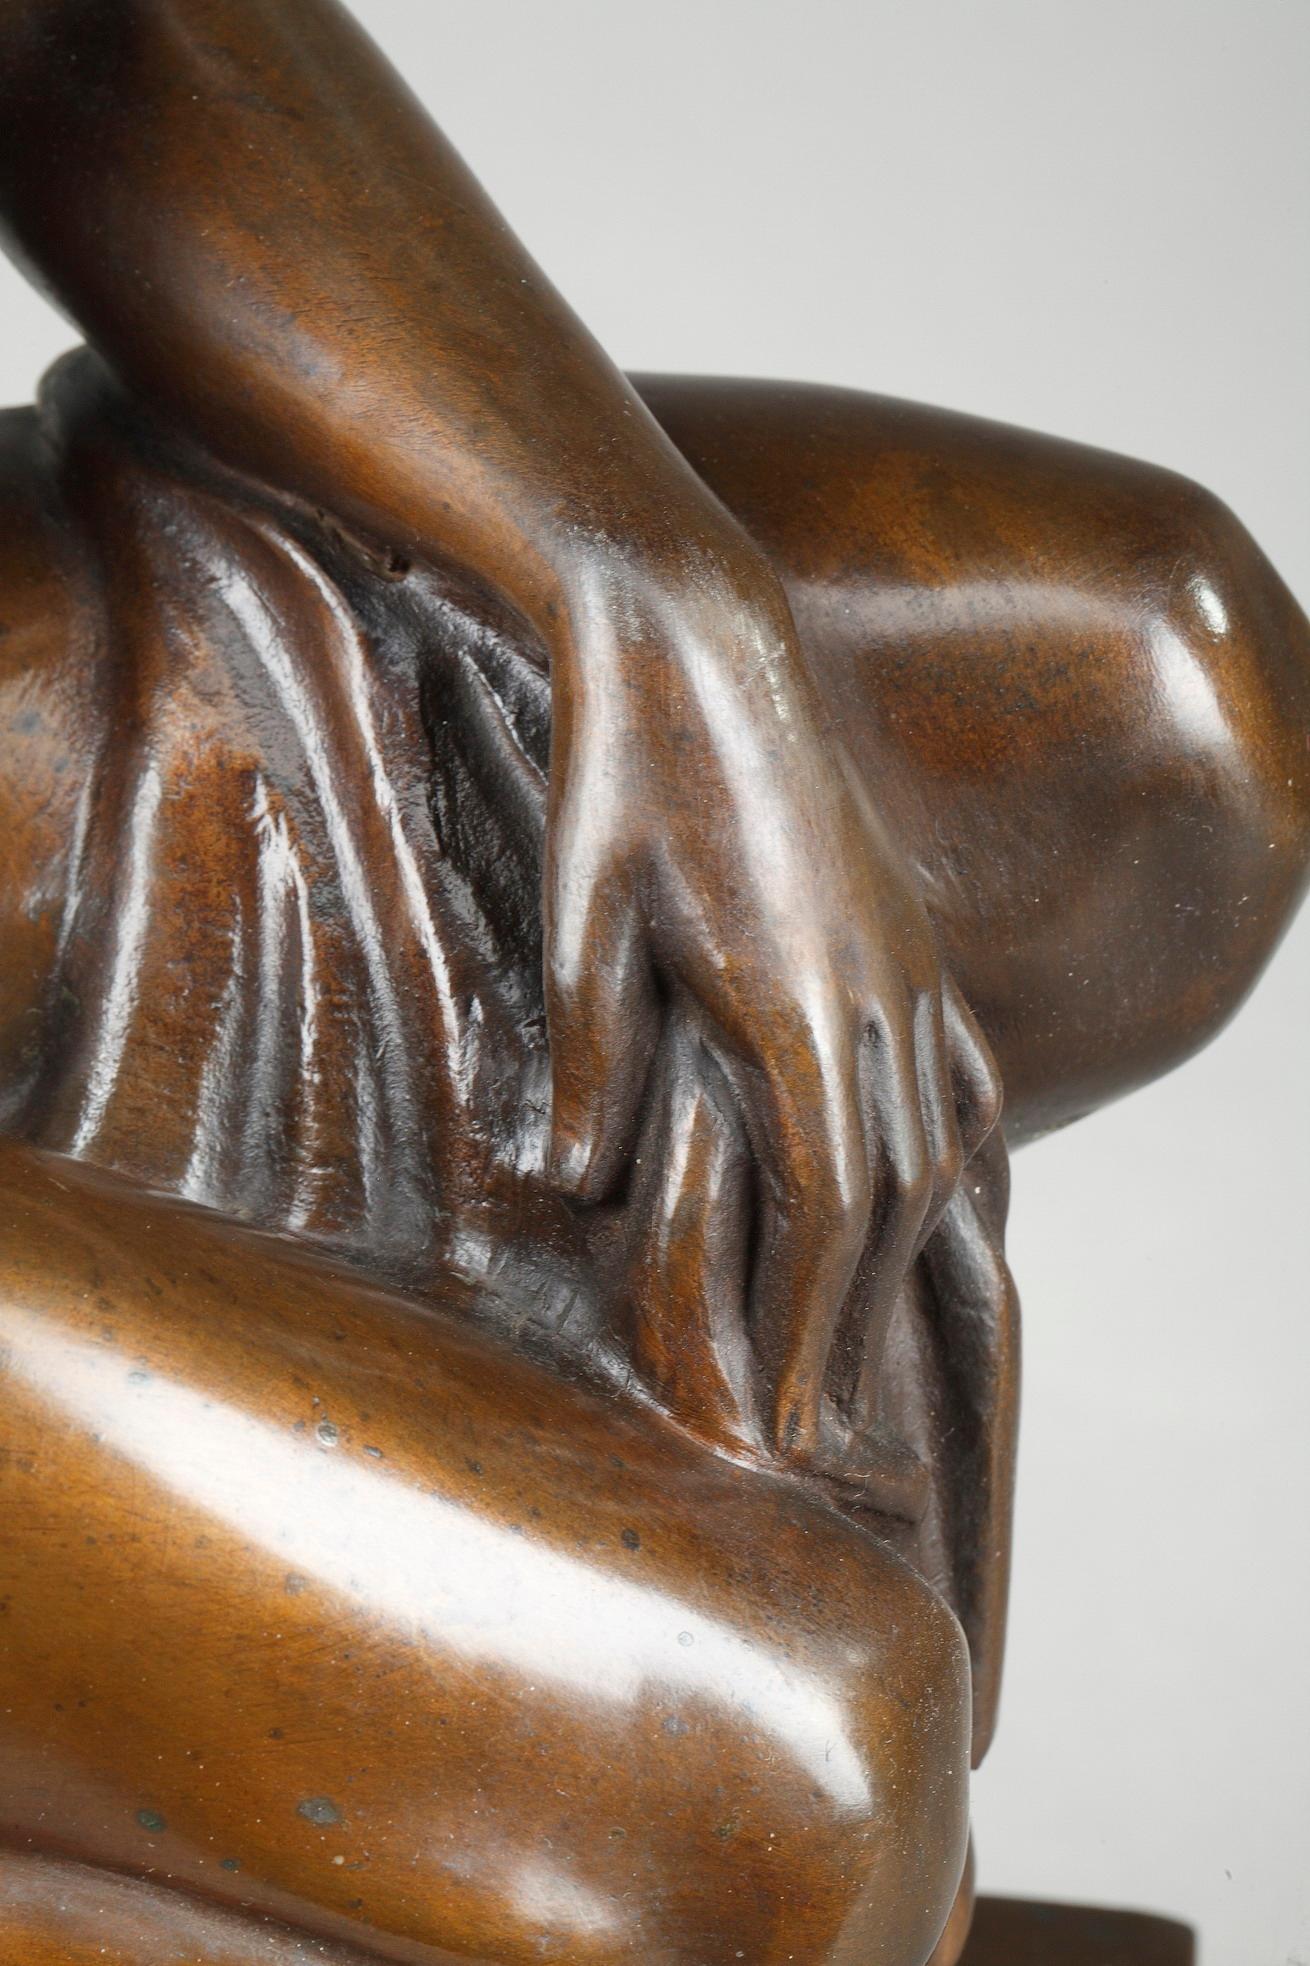 Sculpture Art déco en bronze à patine brune, représentant une femme nue accroupie tenant une draperie. La figure repose sur un socle en marbre rouge et beige. Le bronze est marqué FZP et daté de 1921. Timbre rectangulaire, marqué : Kunstanstalt WMF